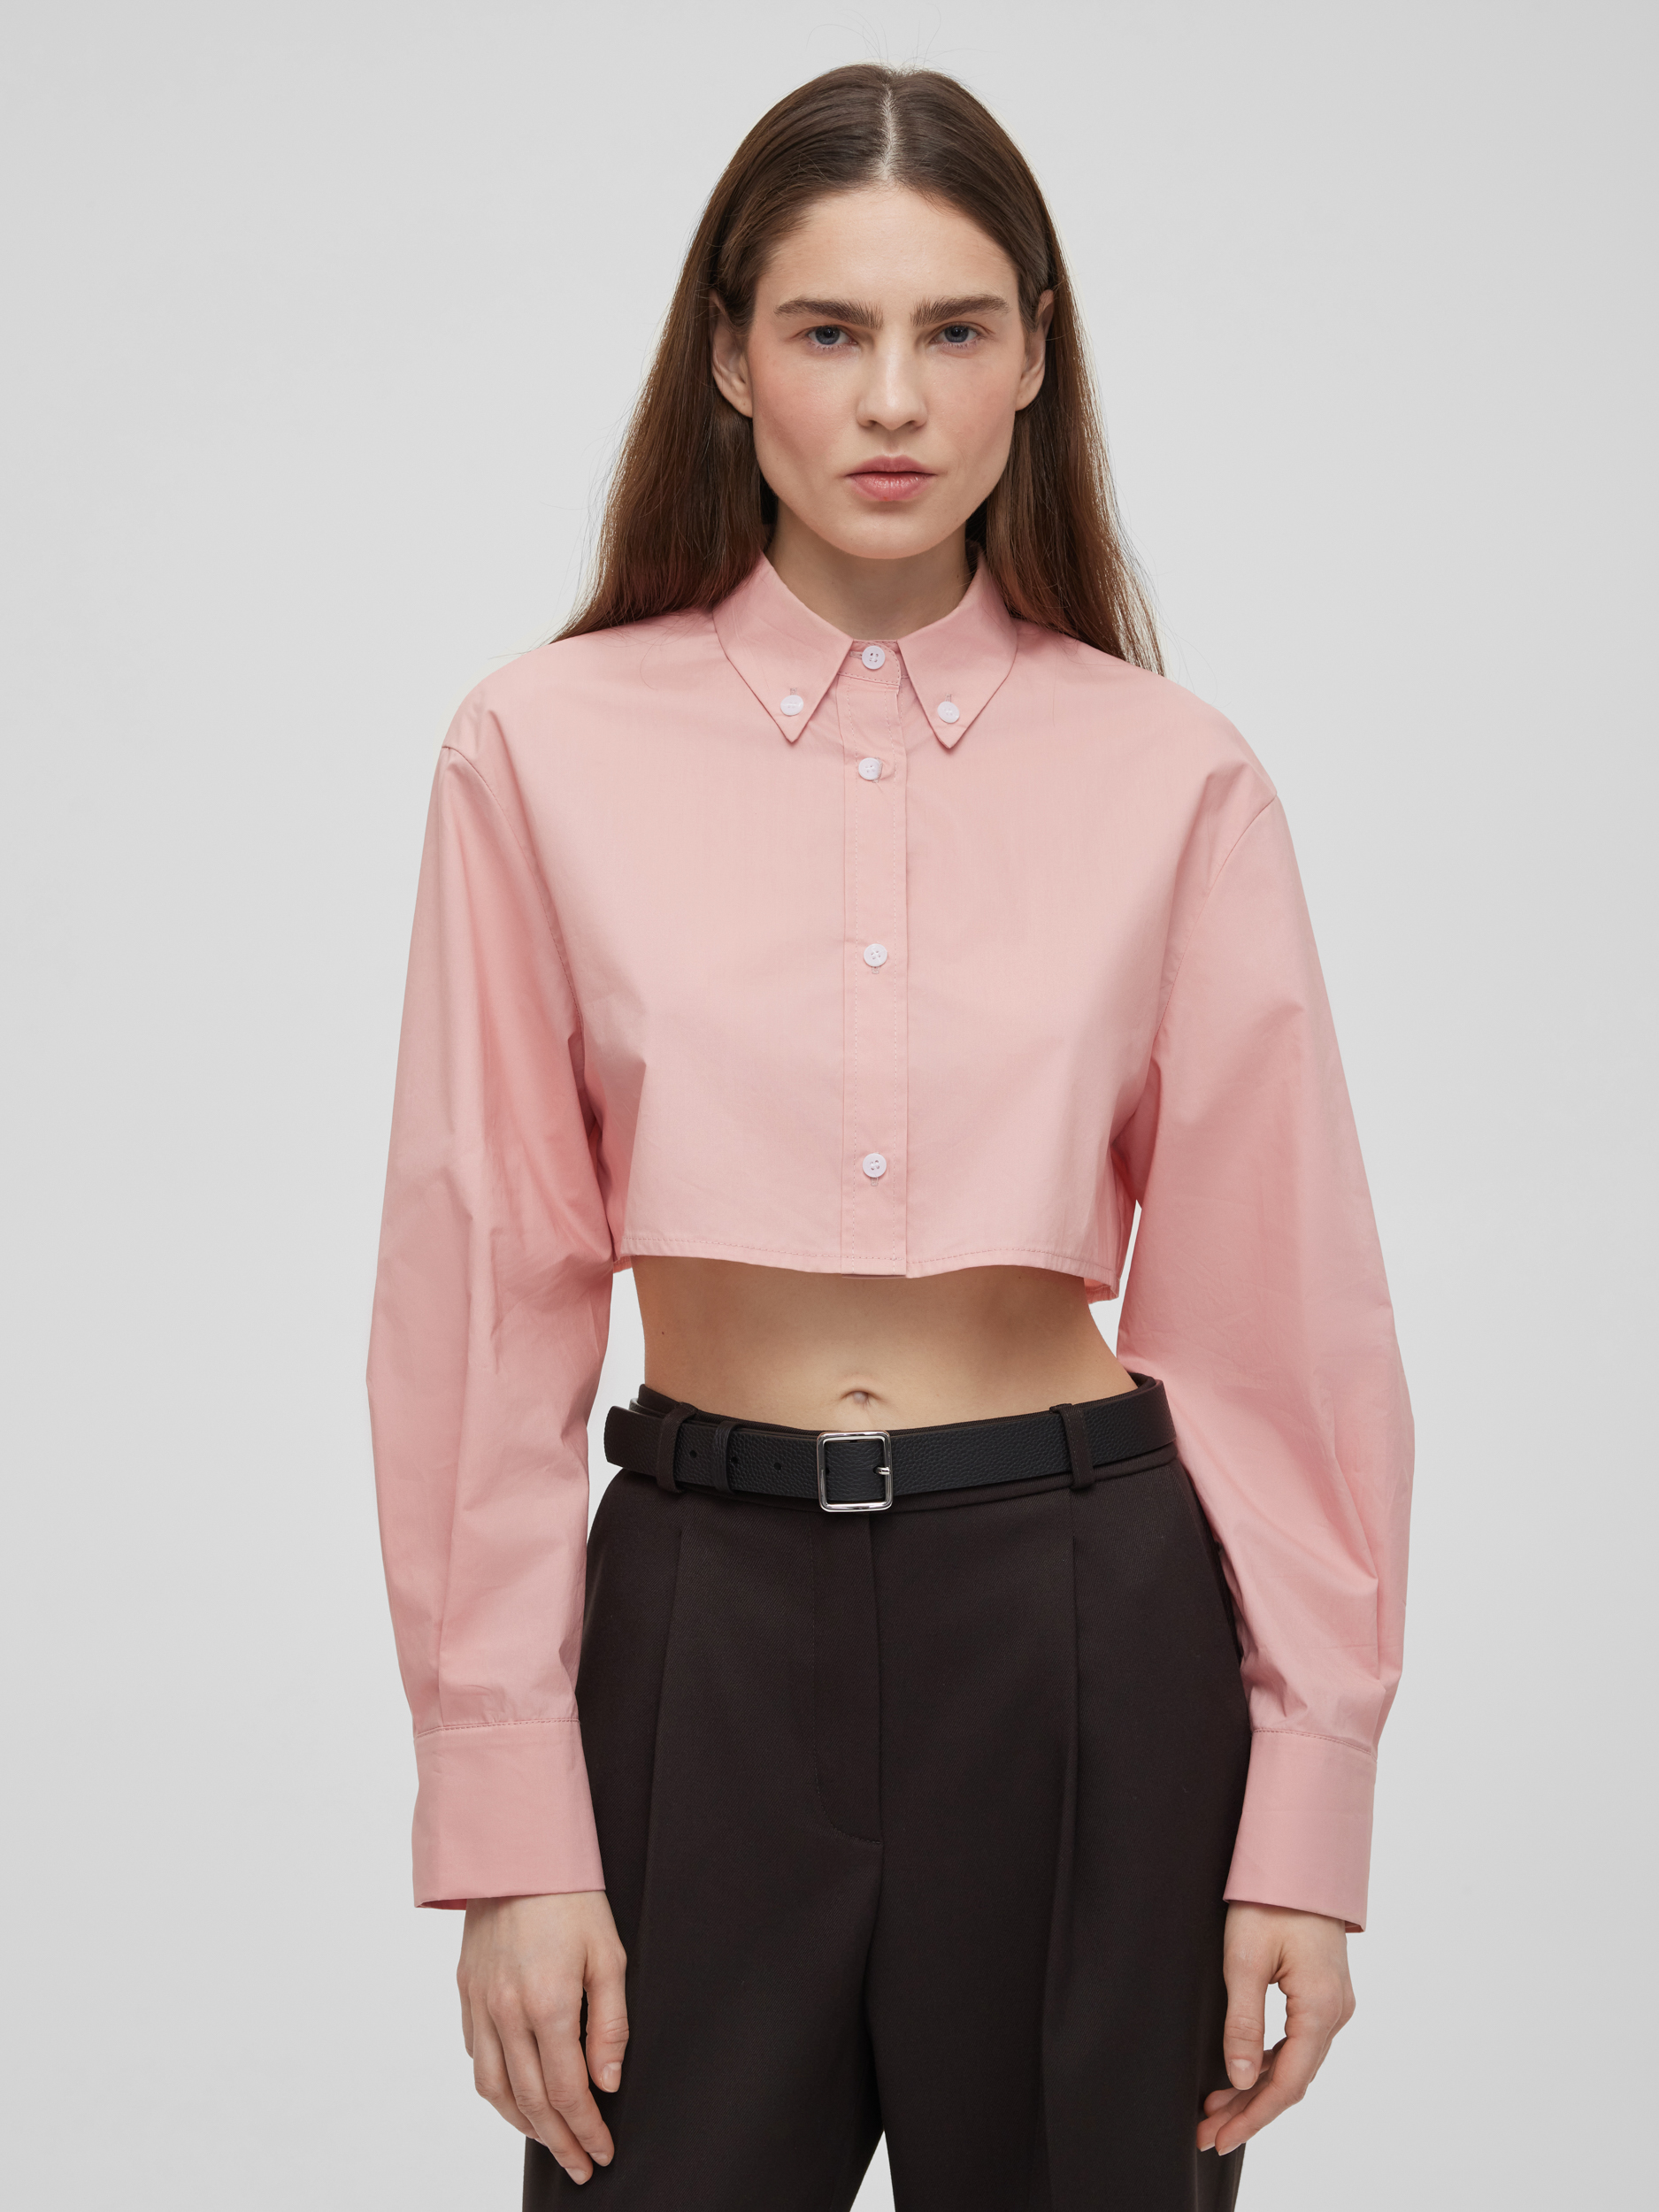 Рубашка женская короткая из хлопка, цвет – розовый рубашка женская короткая из хлопка цвет – серый